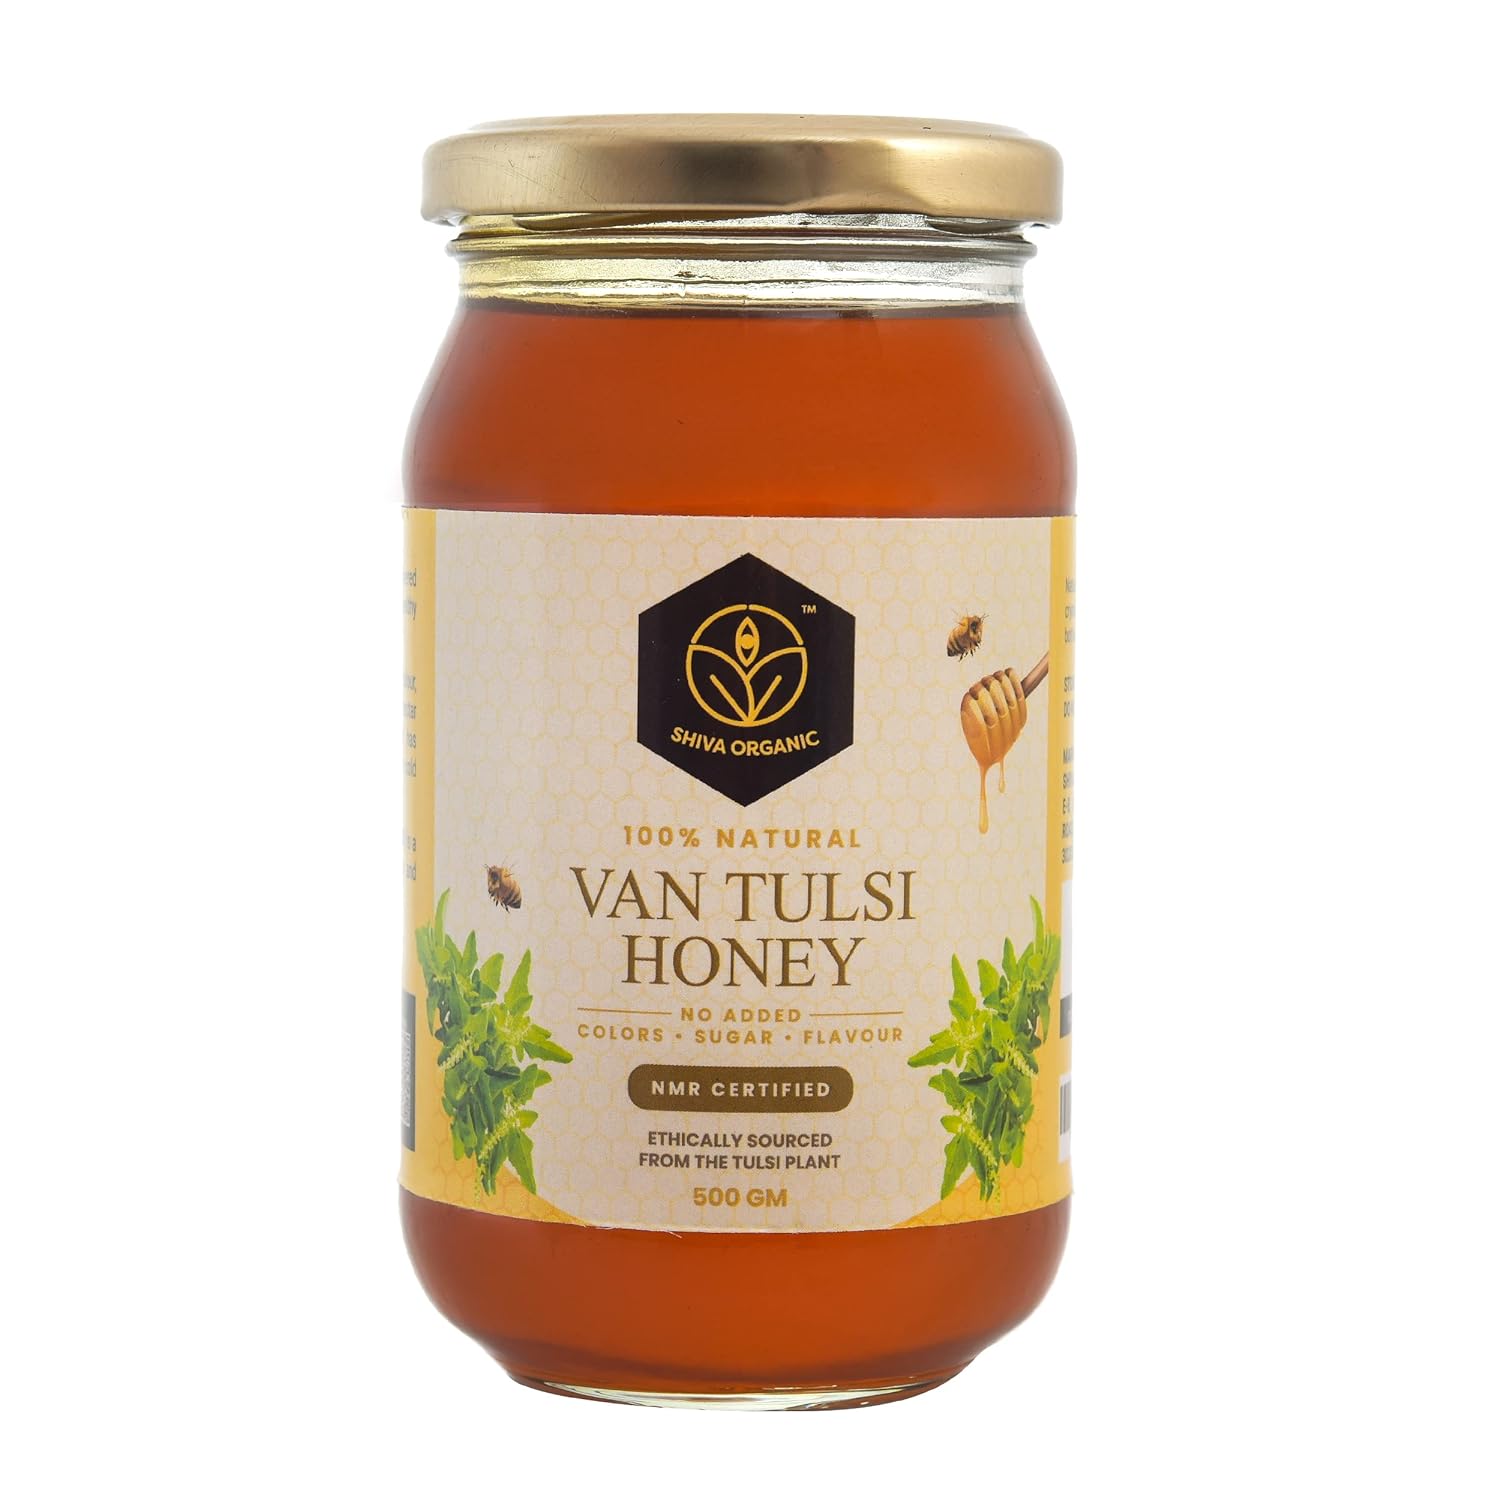 Shiva Organic’s VanTulsi Honey